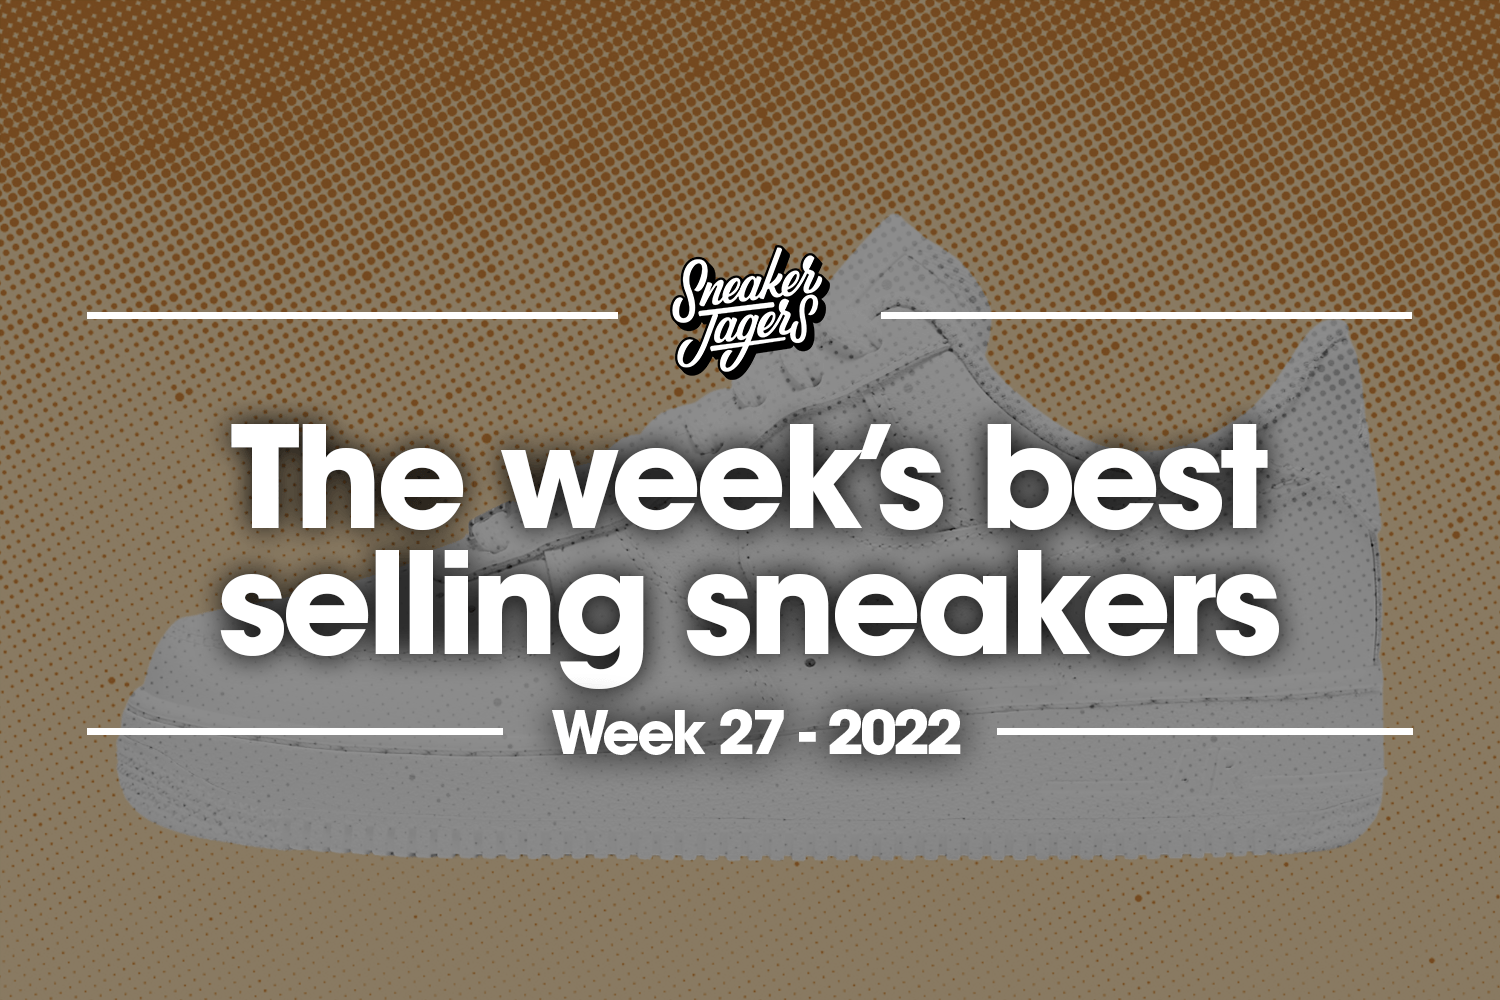 The 5 best-selling sneakers of week 27